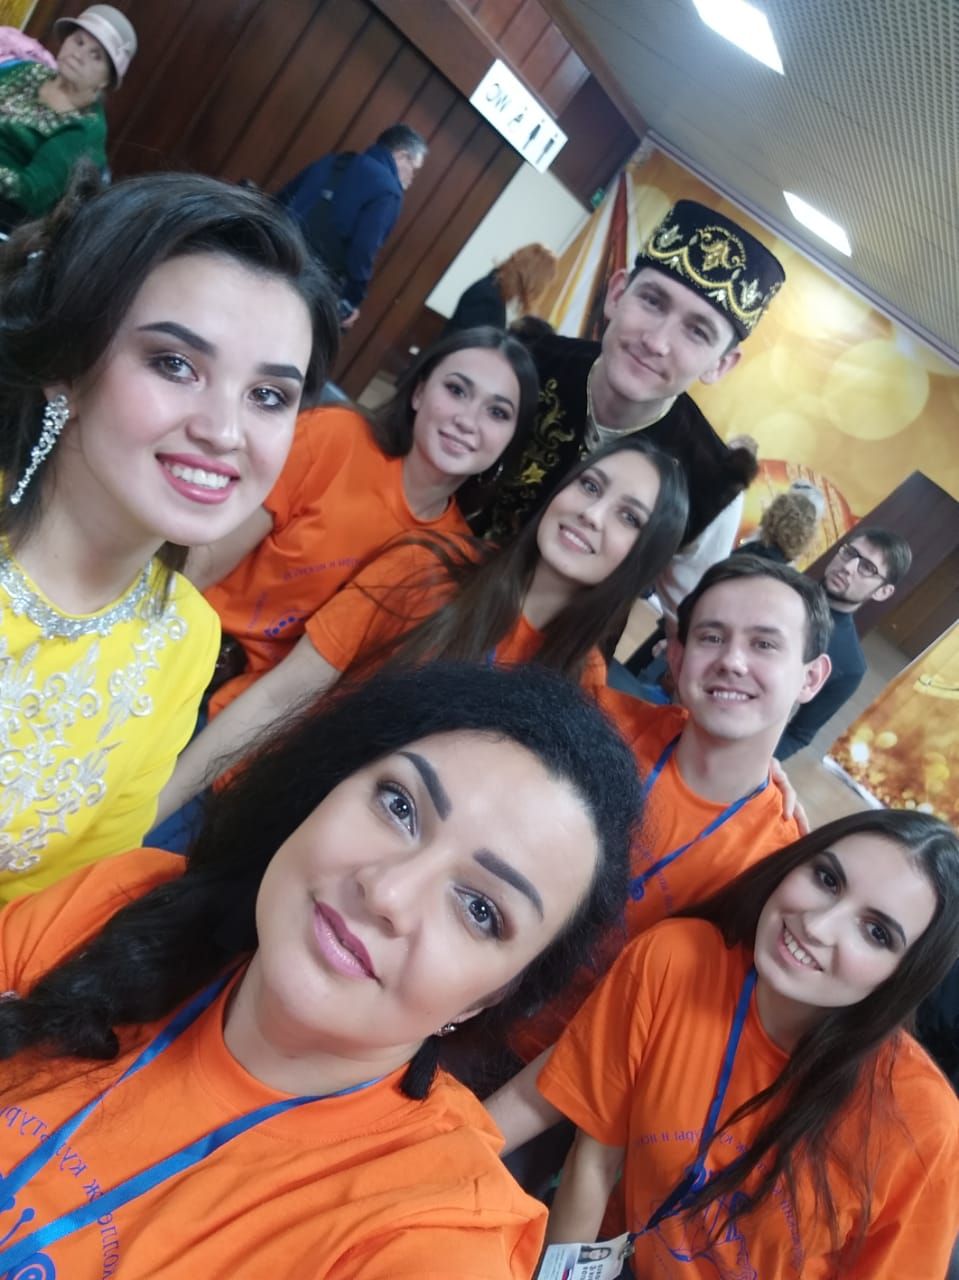 Команда Елабужского колледжа культуры и искусств прославила Республику Татарстан